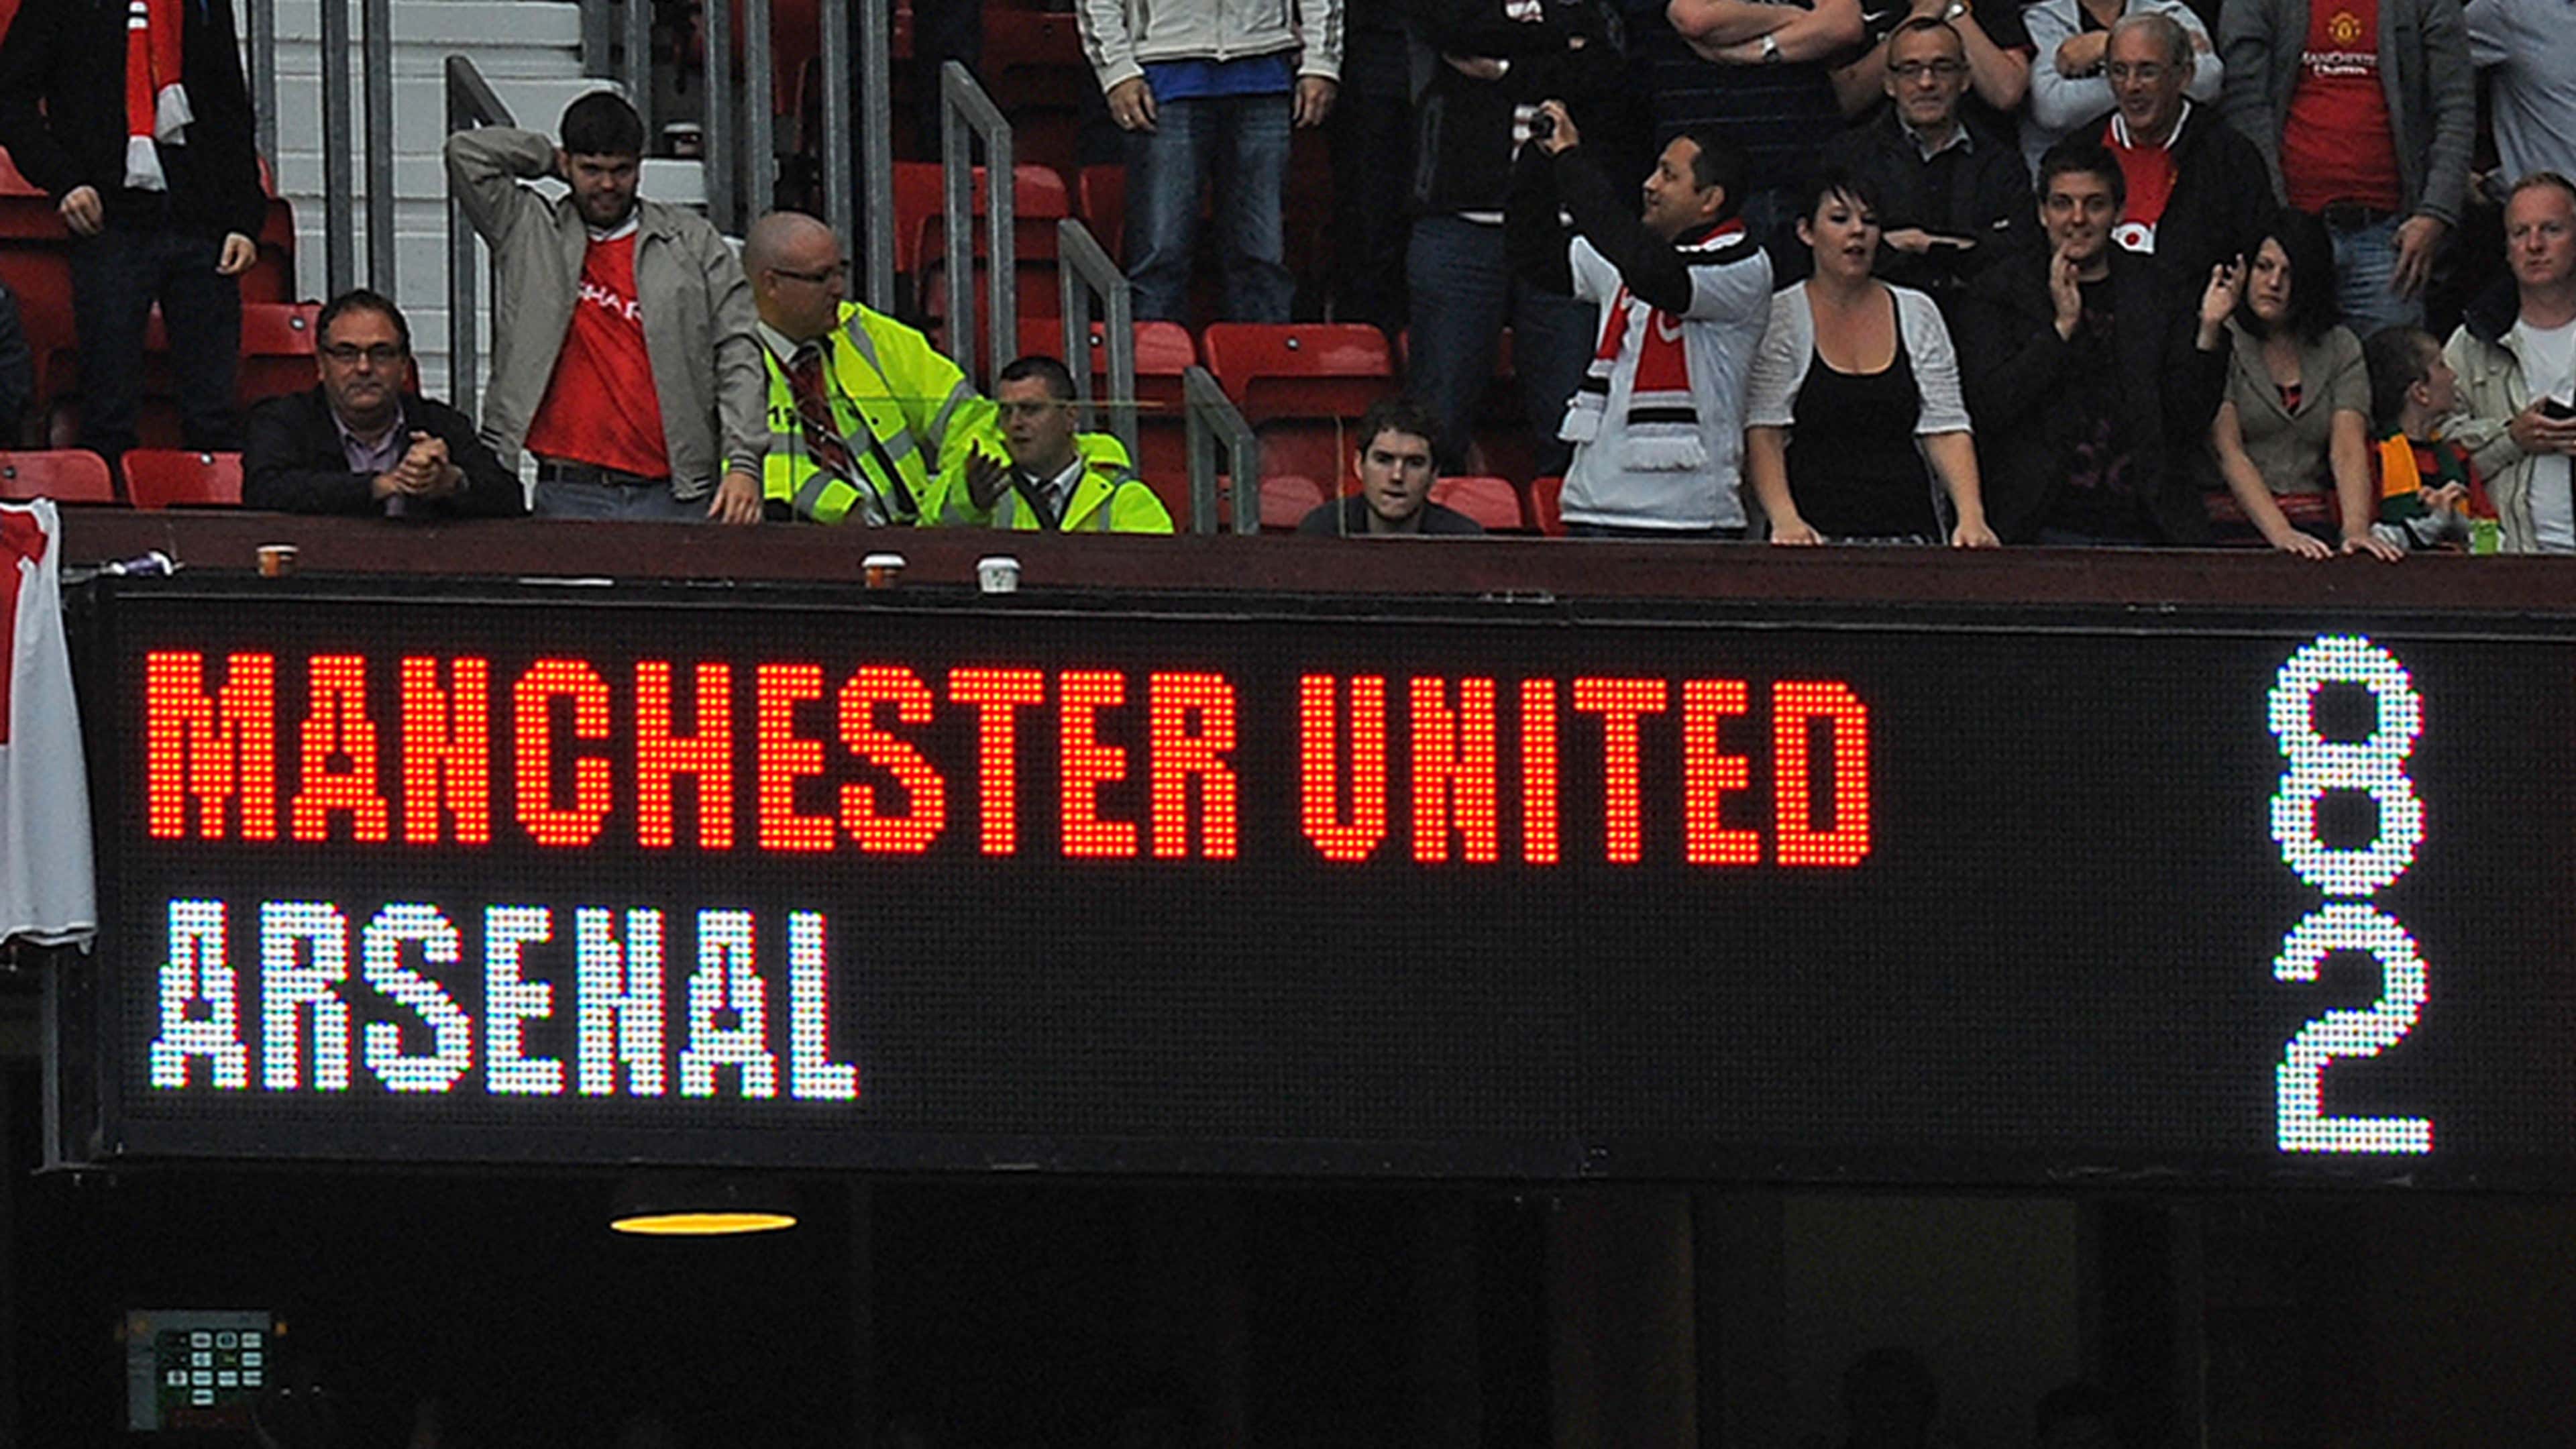 Manchester United Arsenal Premier League 2011-12